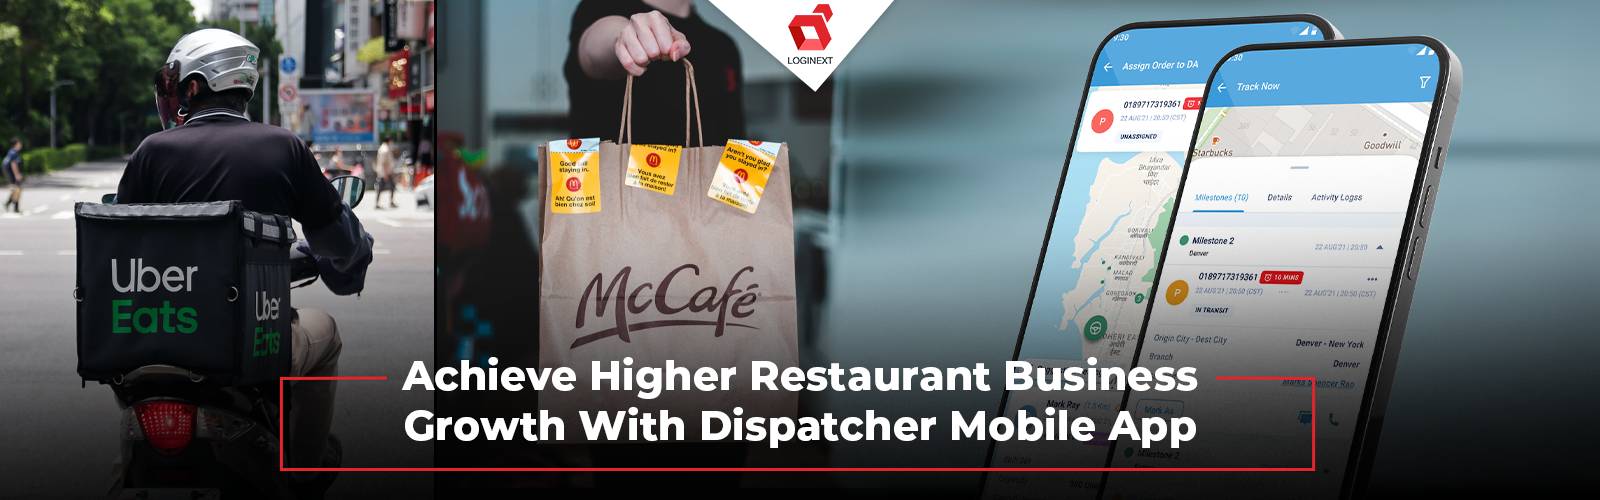 Oppnå betydelig vekst i restaurantvirksomheten med Dispatcher Mobile App